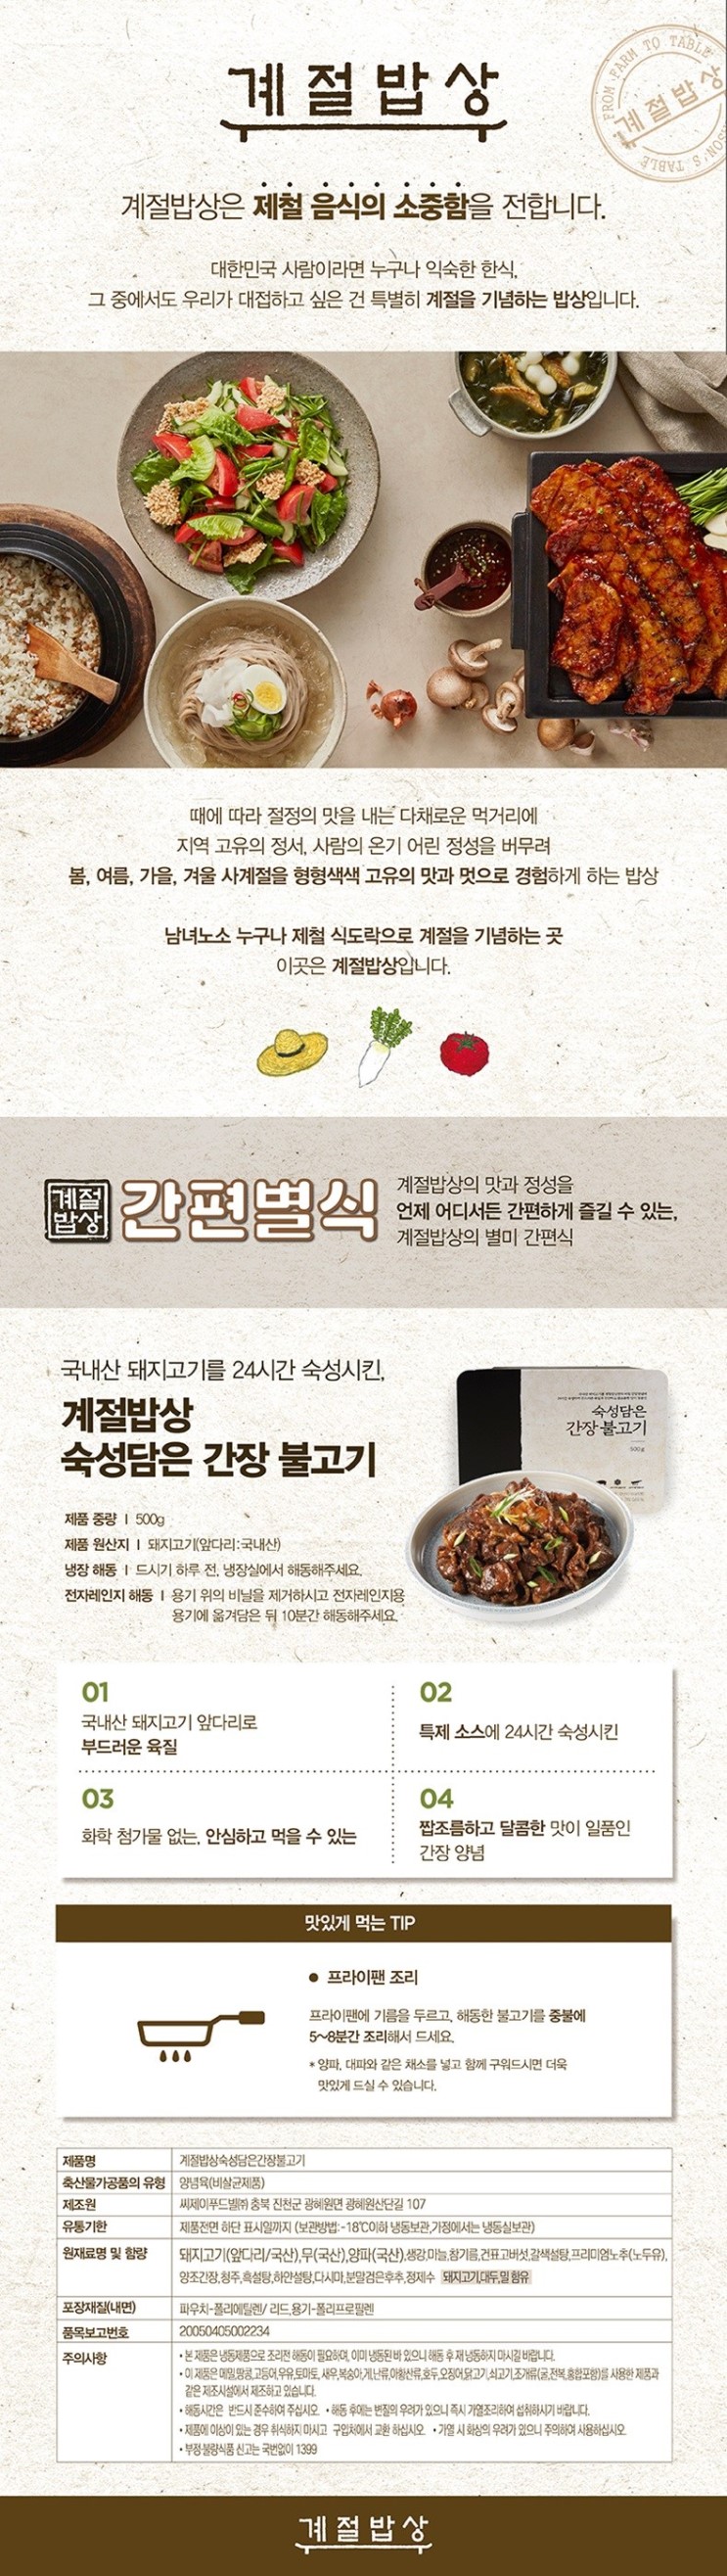 [계절밥상] 숙성담은간장불고기 500g